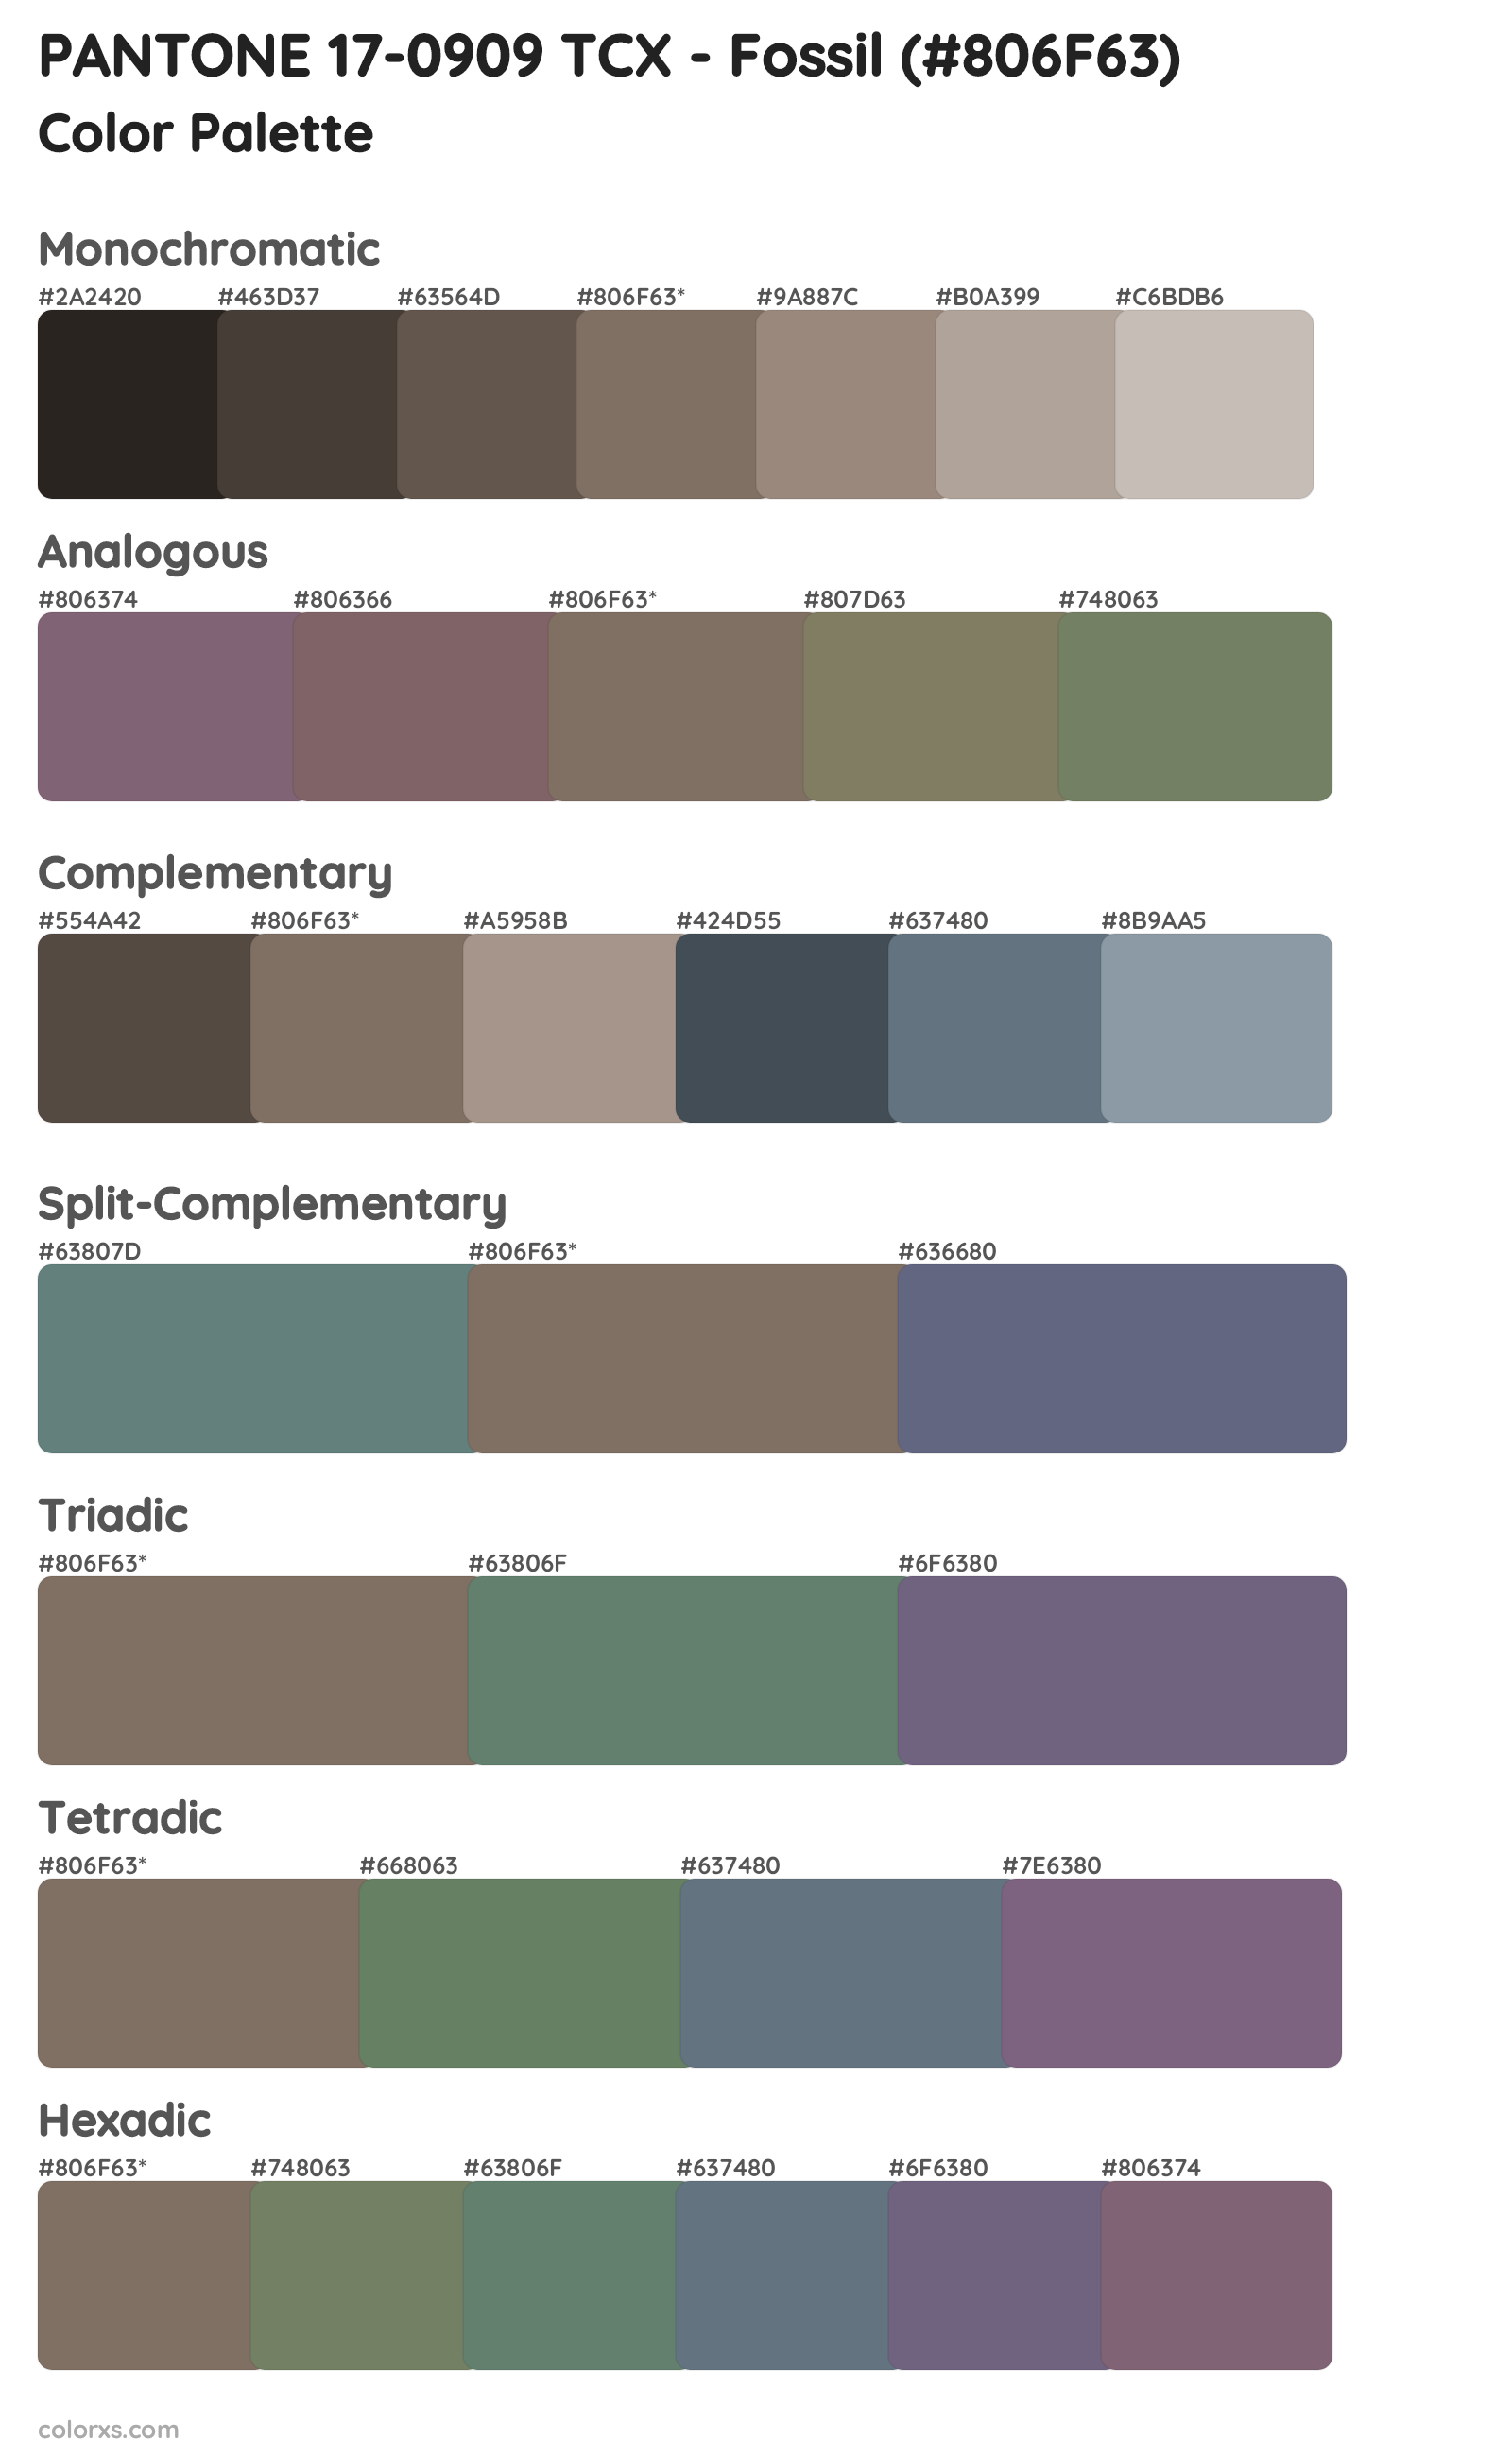 PANTONE 17-0909 TCX - Fossil color palettes and color scheme ...